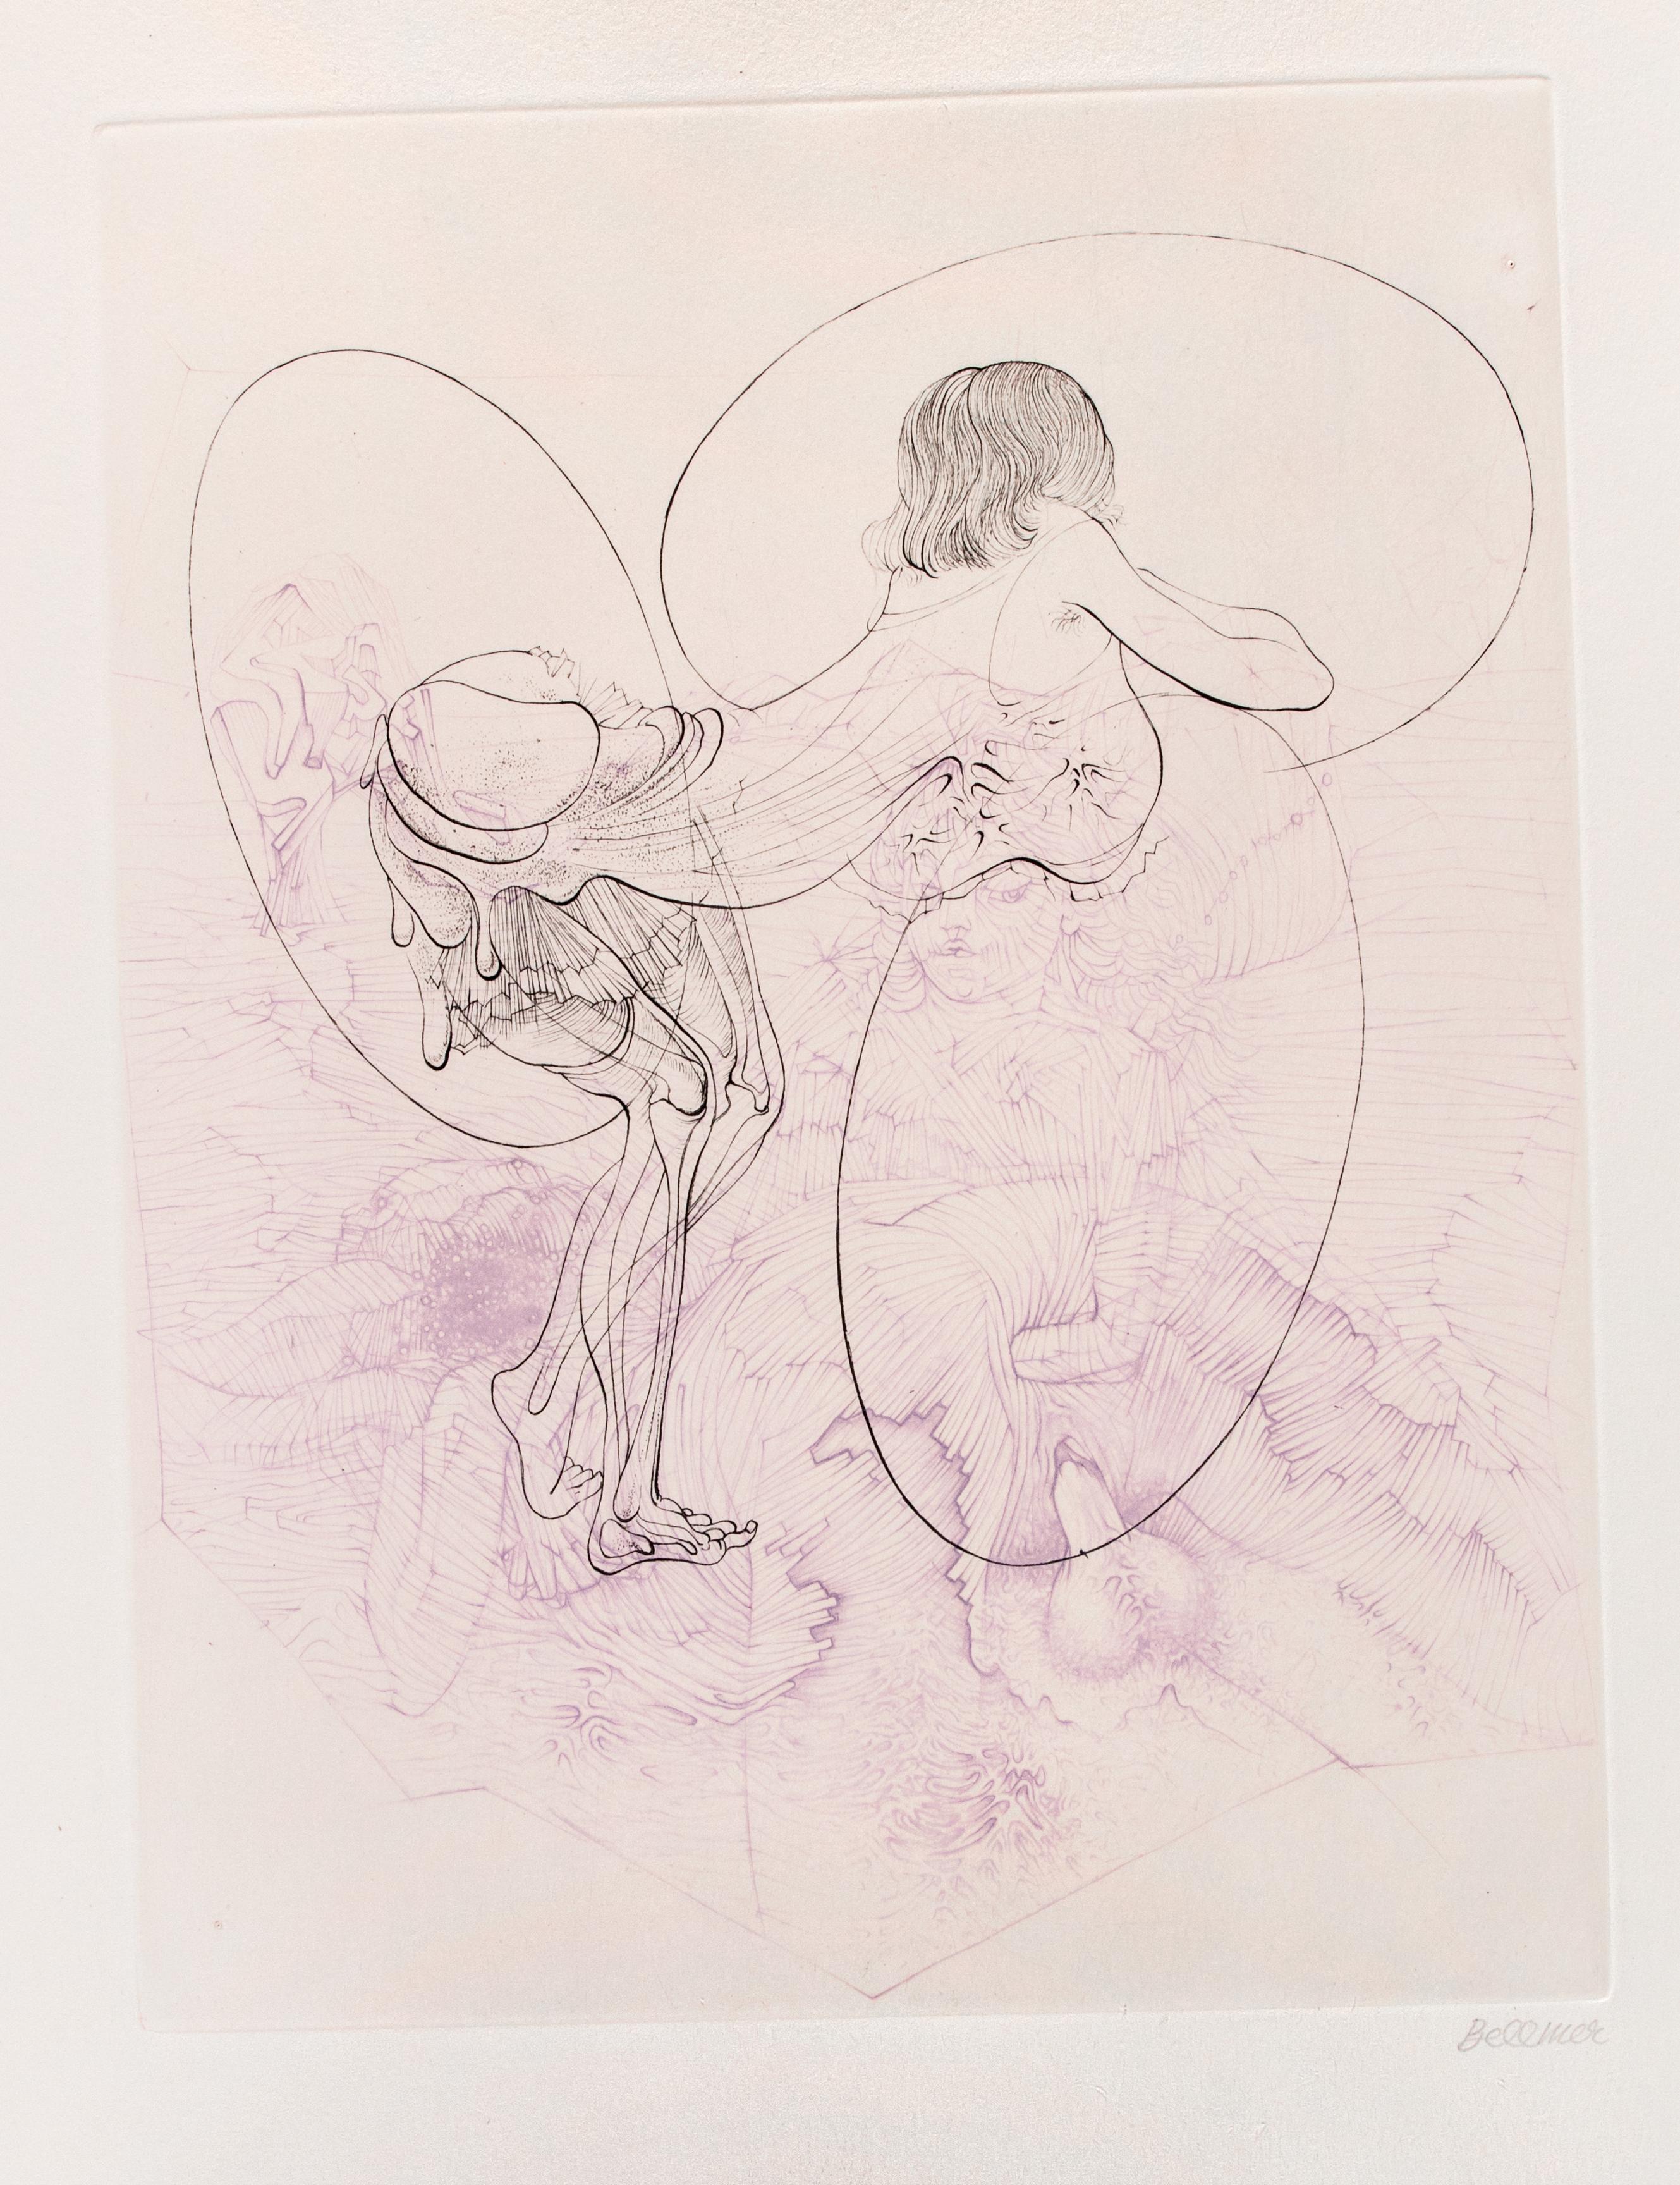 Juliette ou les Prospérités du Vice ist ein zeitgenössisches Kunstwerk, das von Hans Bellmer realisiert wurde.

Handsigniert. Aus der Mappe "Petit Traité de Morale", Paris, Editions Georges Visat, 1968.

Kopie auf Vélin d'Arches aus der zusätzlichen